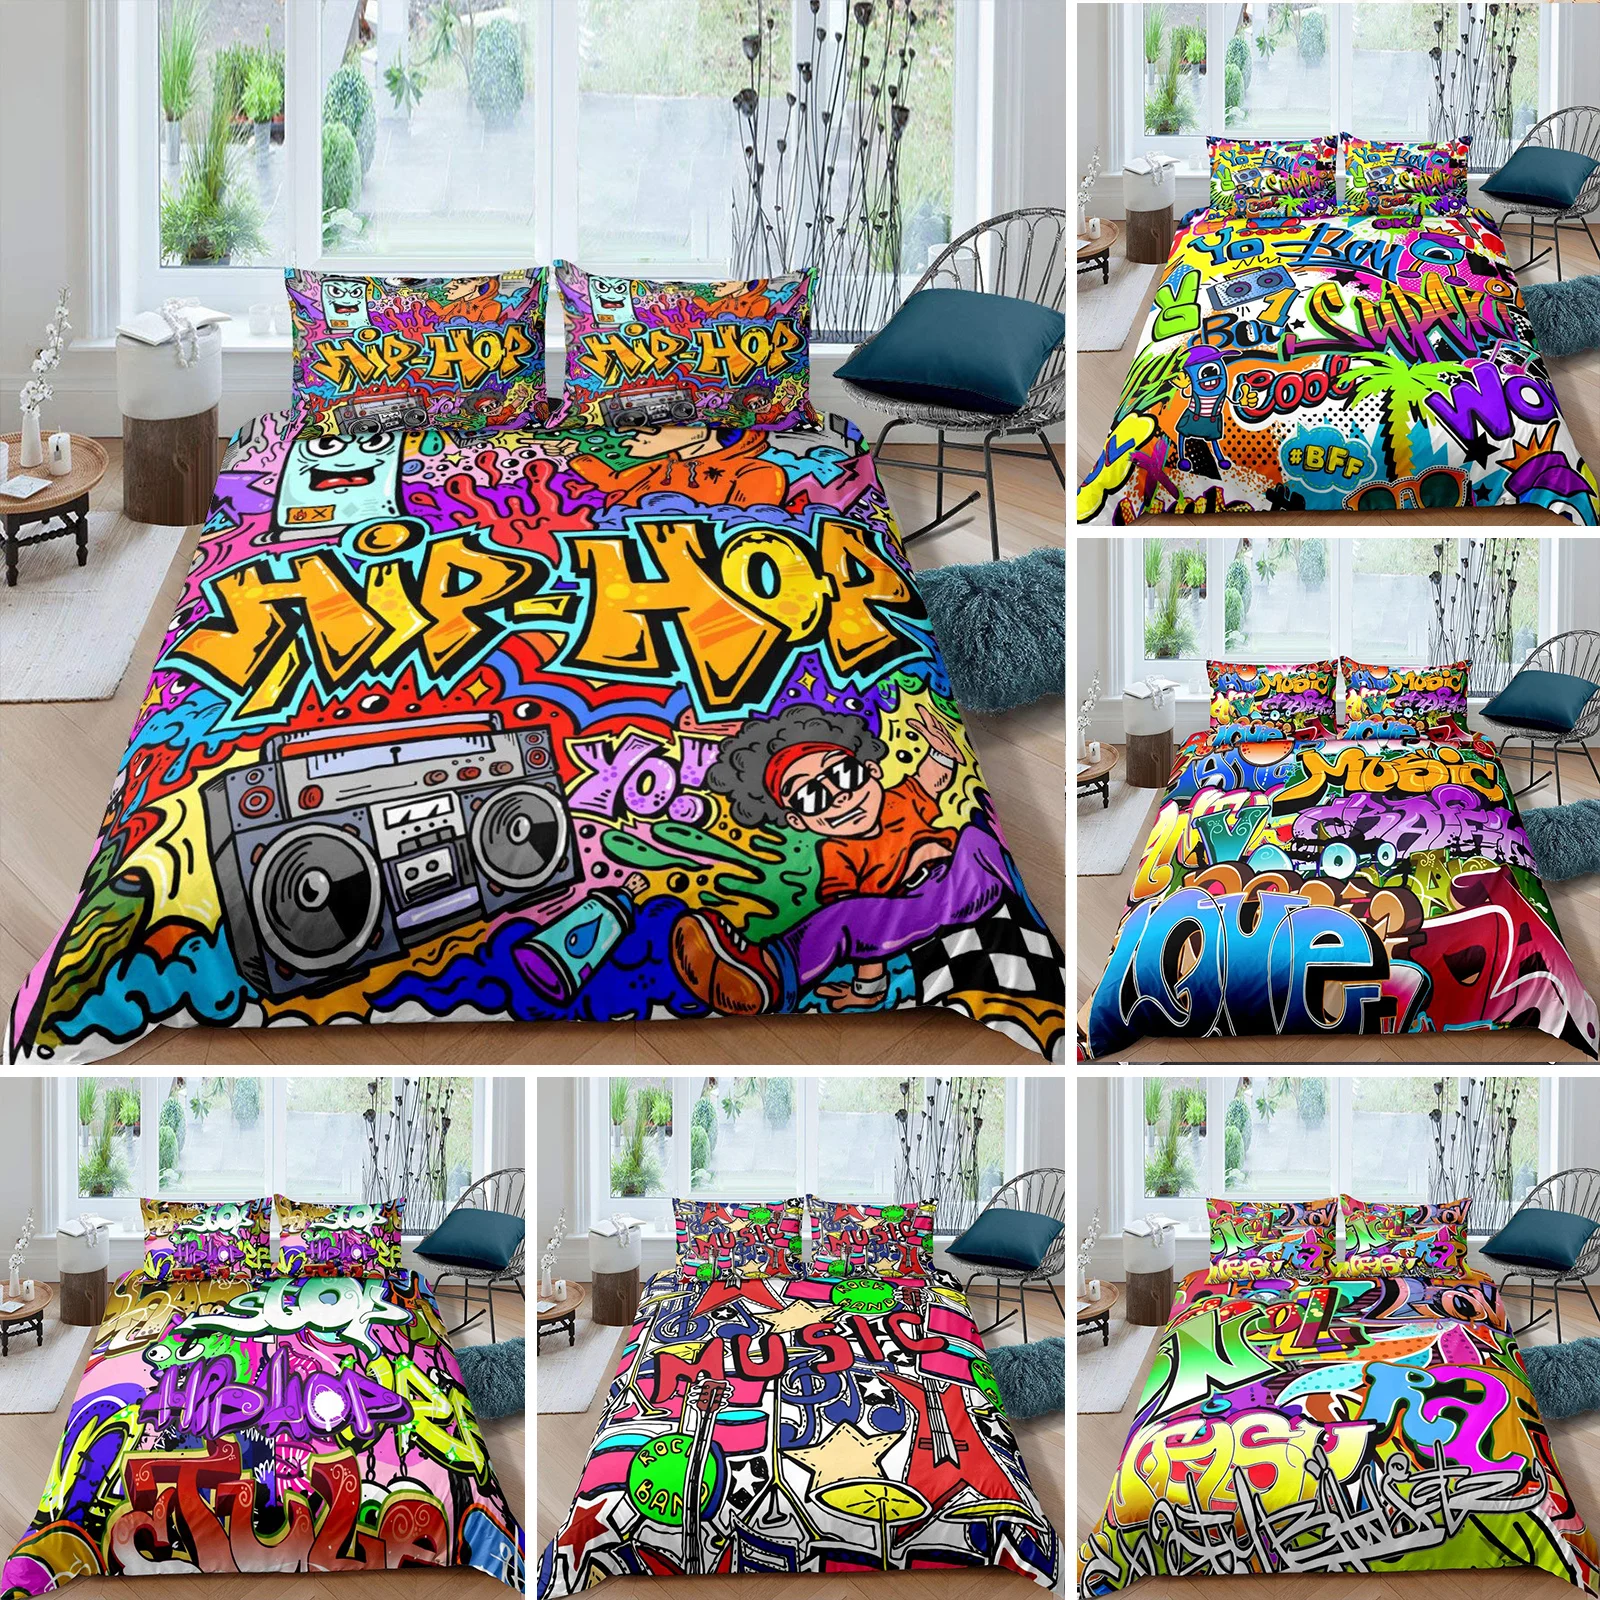 

Пододеяльник в стиле хип-хоп, Комплект постельного белья из полиэстера для детей и подростков, размер King/Queen, уличная культура, стена, граффити, искусство, рок, музыка, спорт